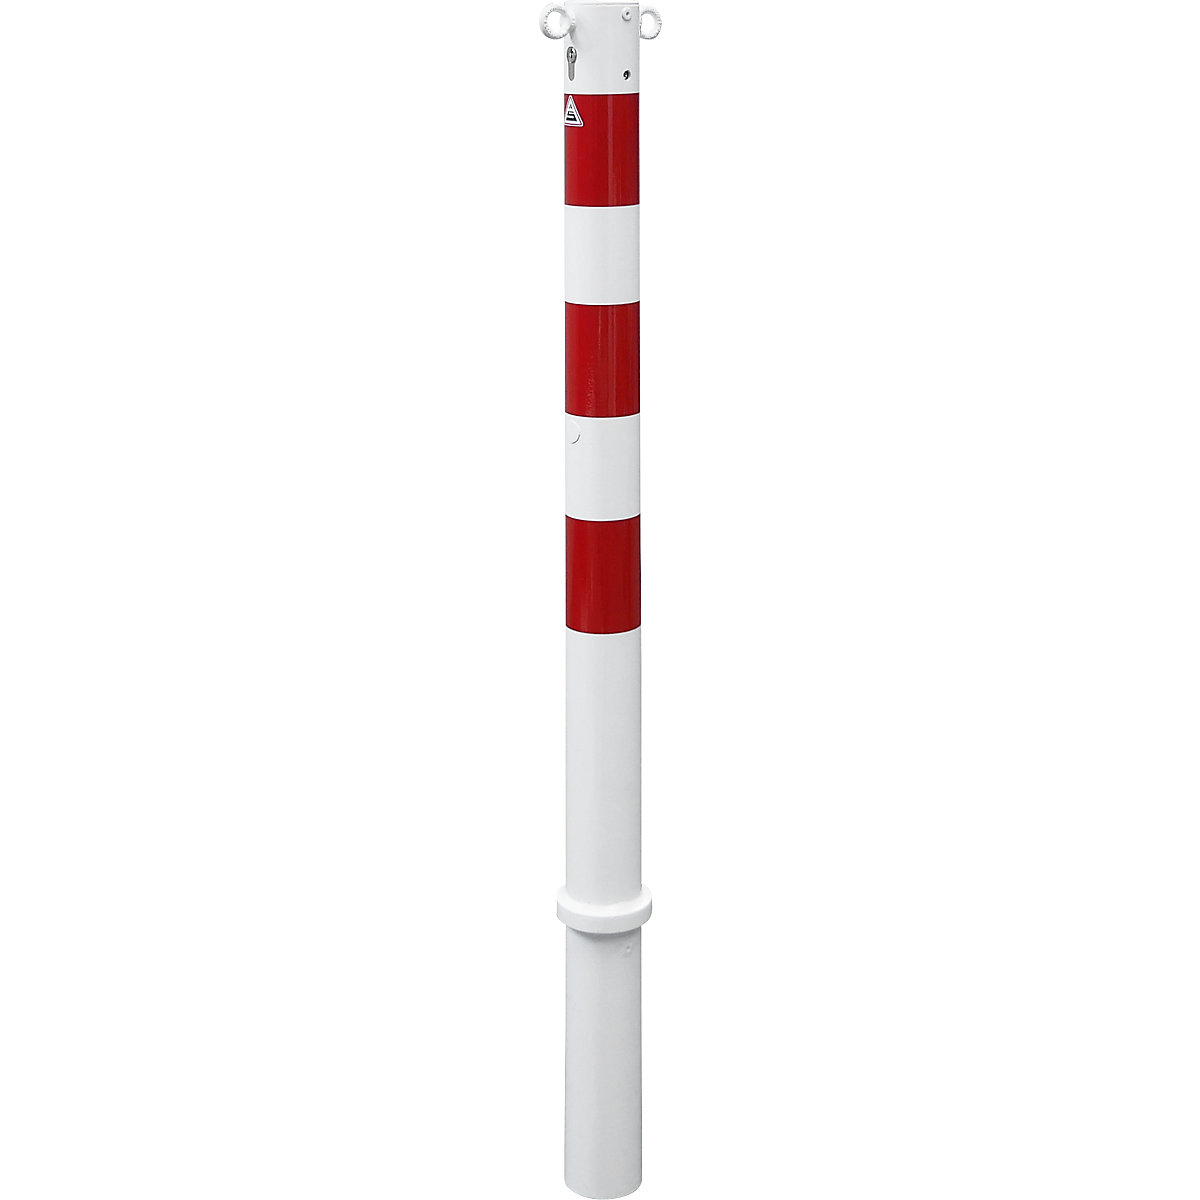 Stupić za ograđivanje, Ø 76 mm, u bijelo / crvenoj boji, s mogućnošću vađenja i profilnim cilindrom, s 2 ušice